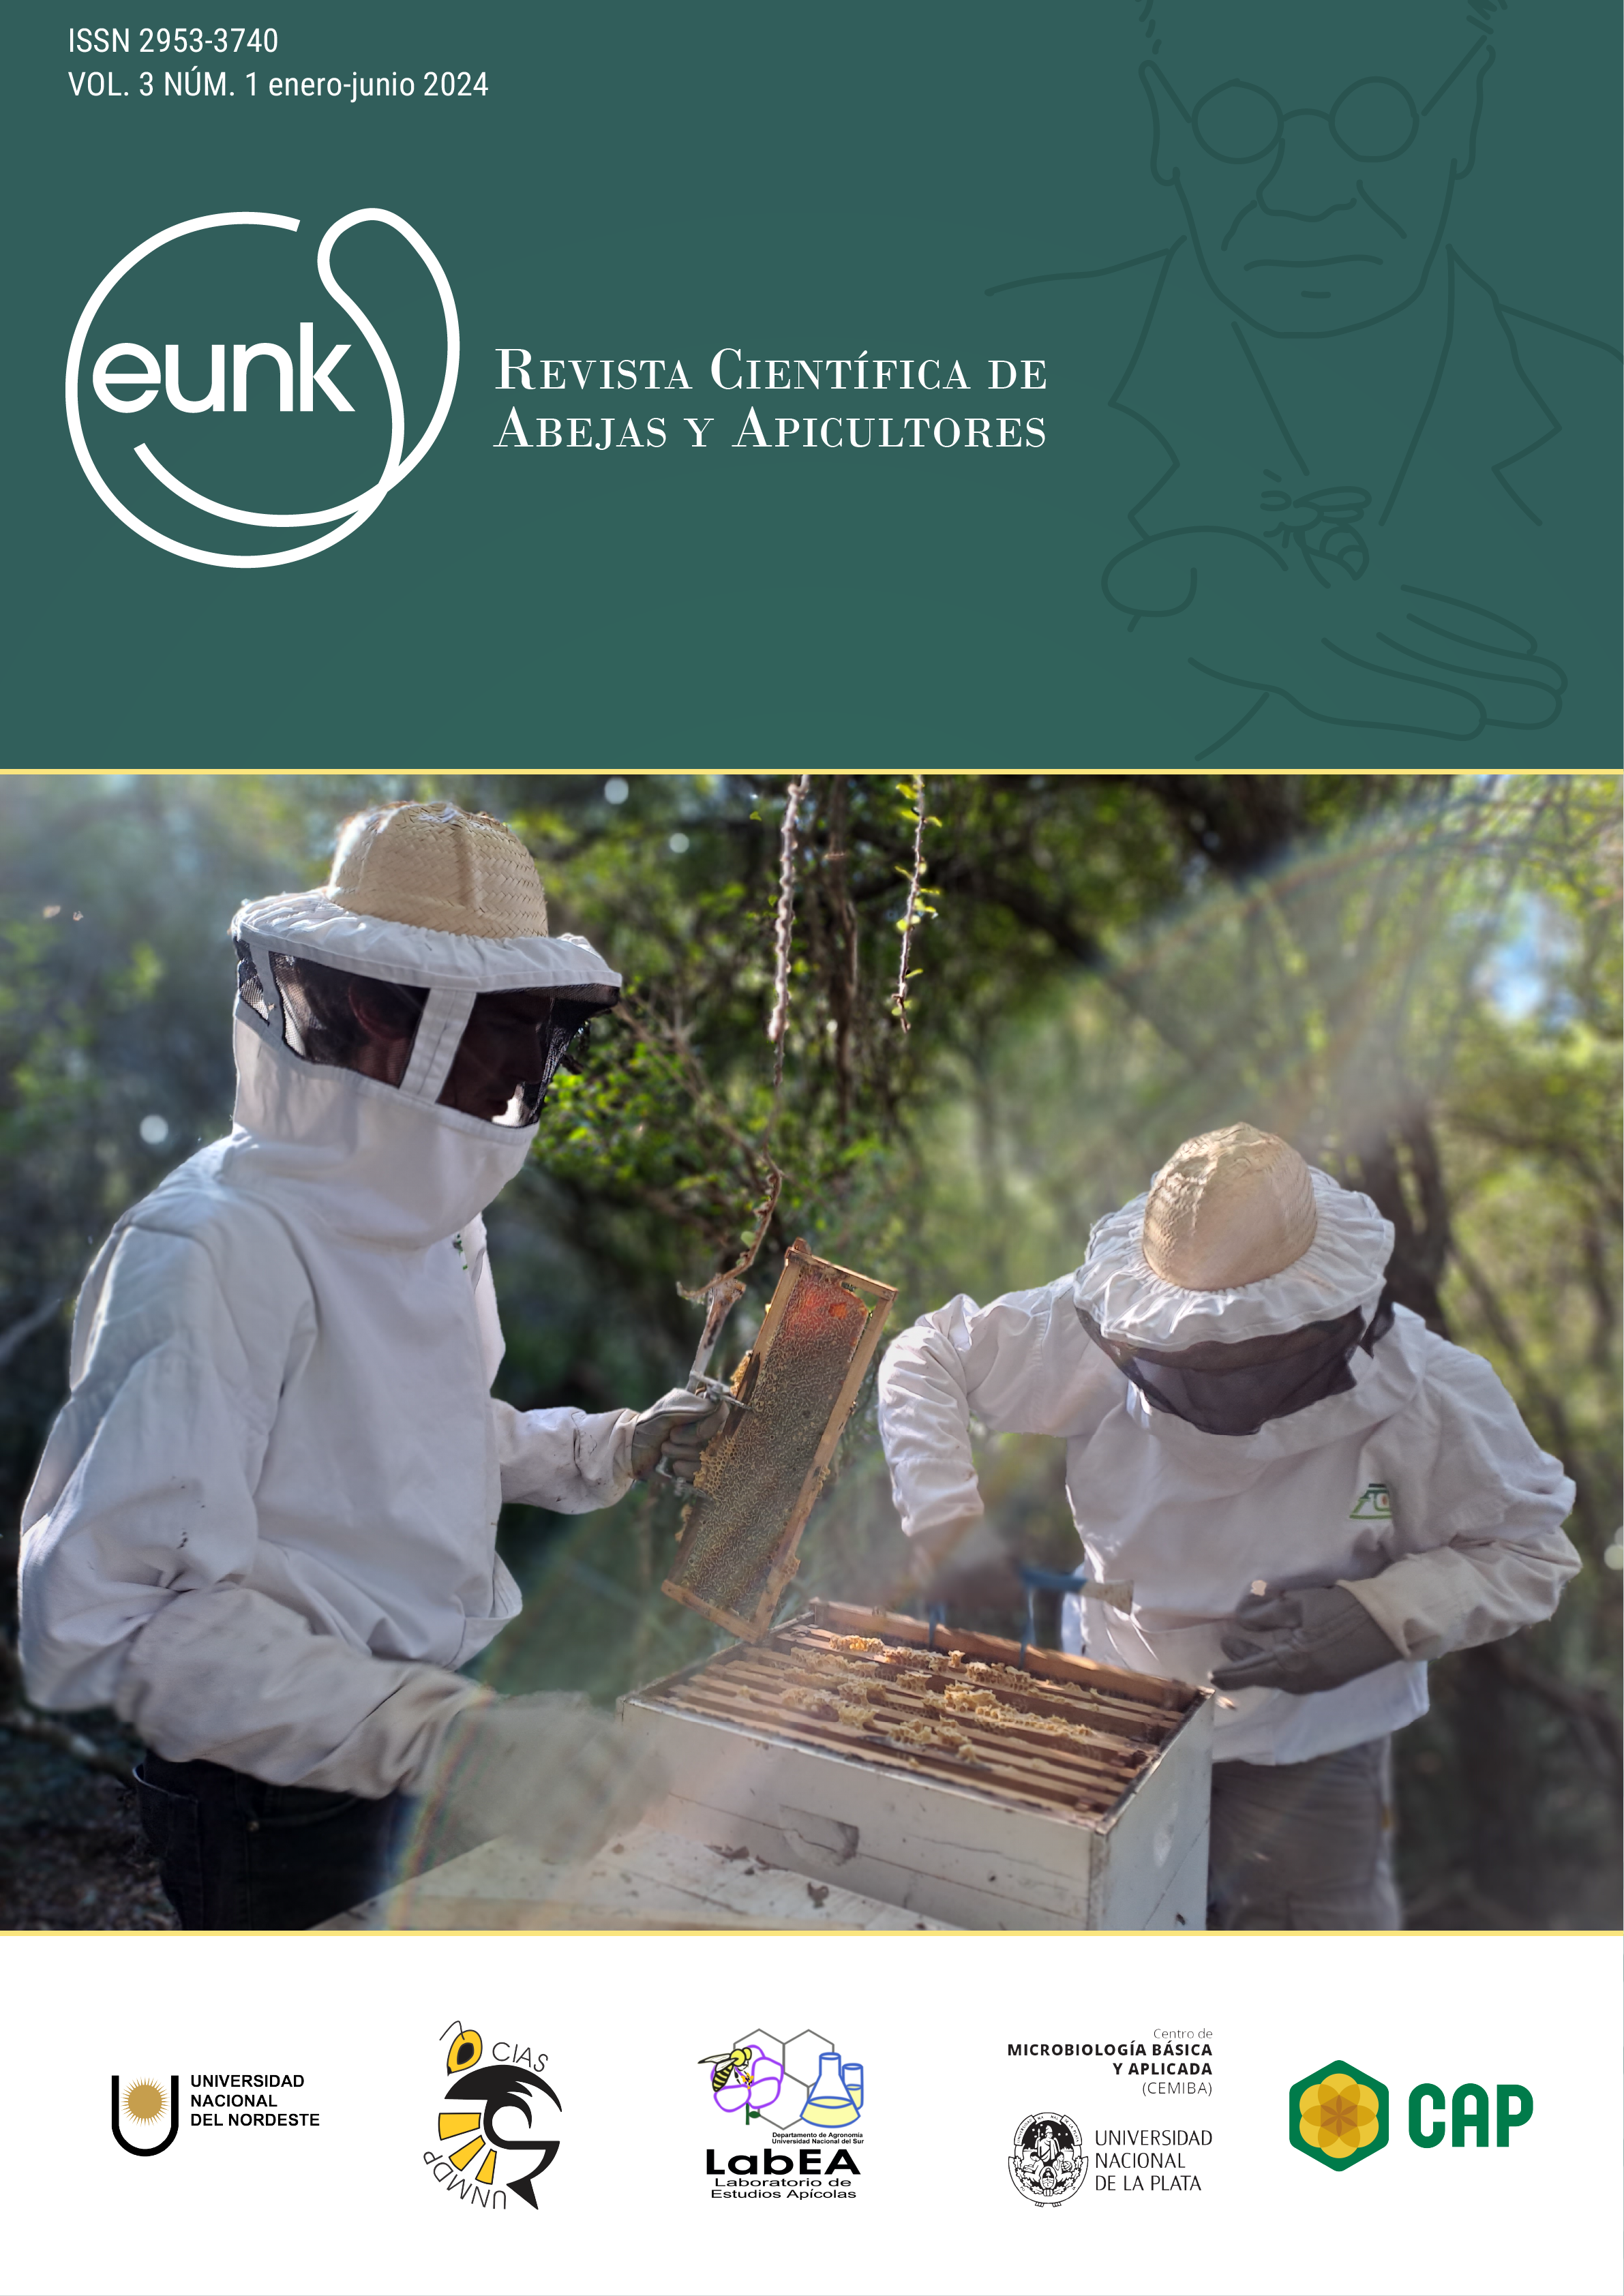 Portada volumen 3, número 1 con una imagen de apicultores trabajando en una colmena